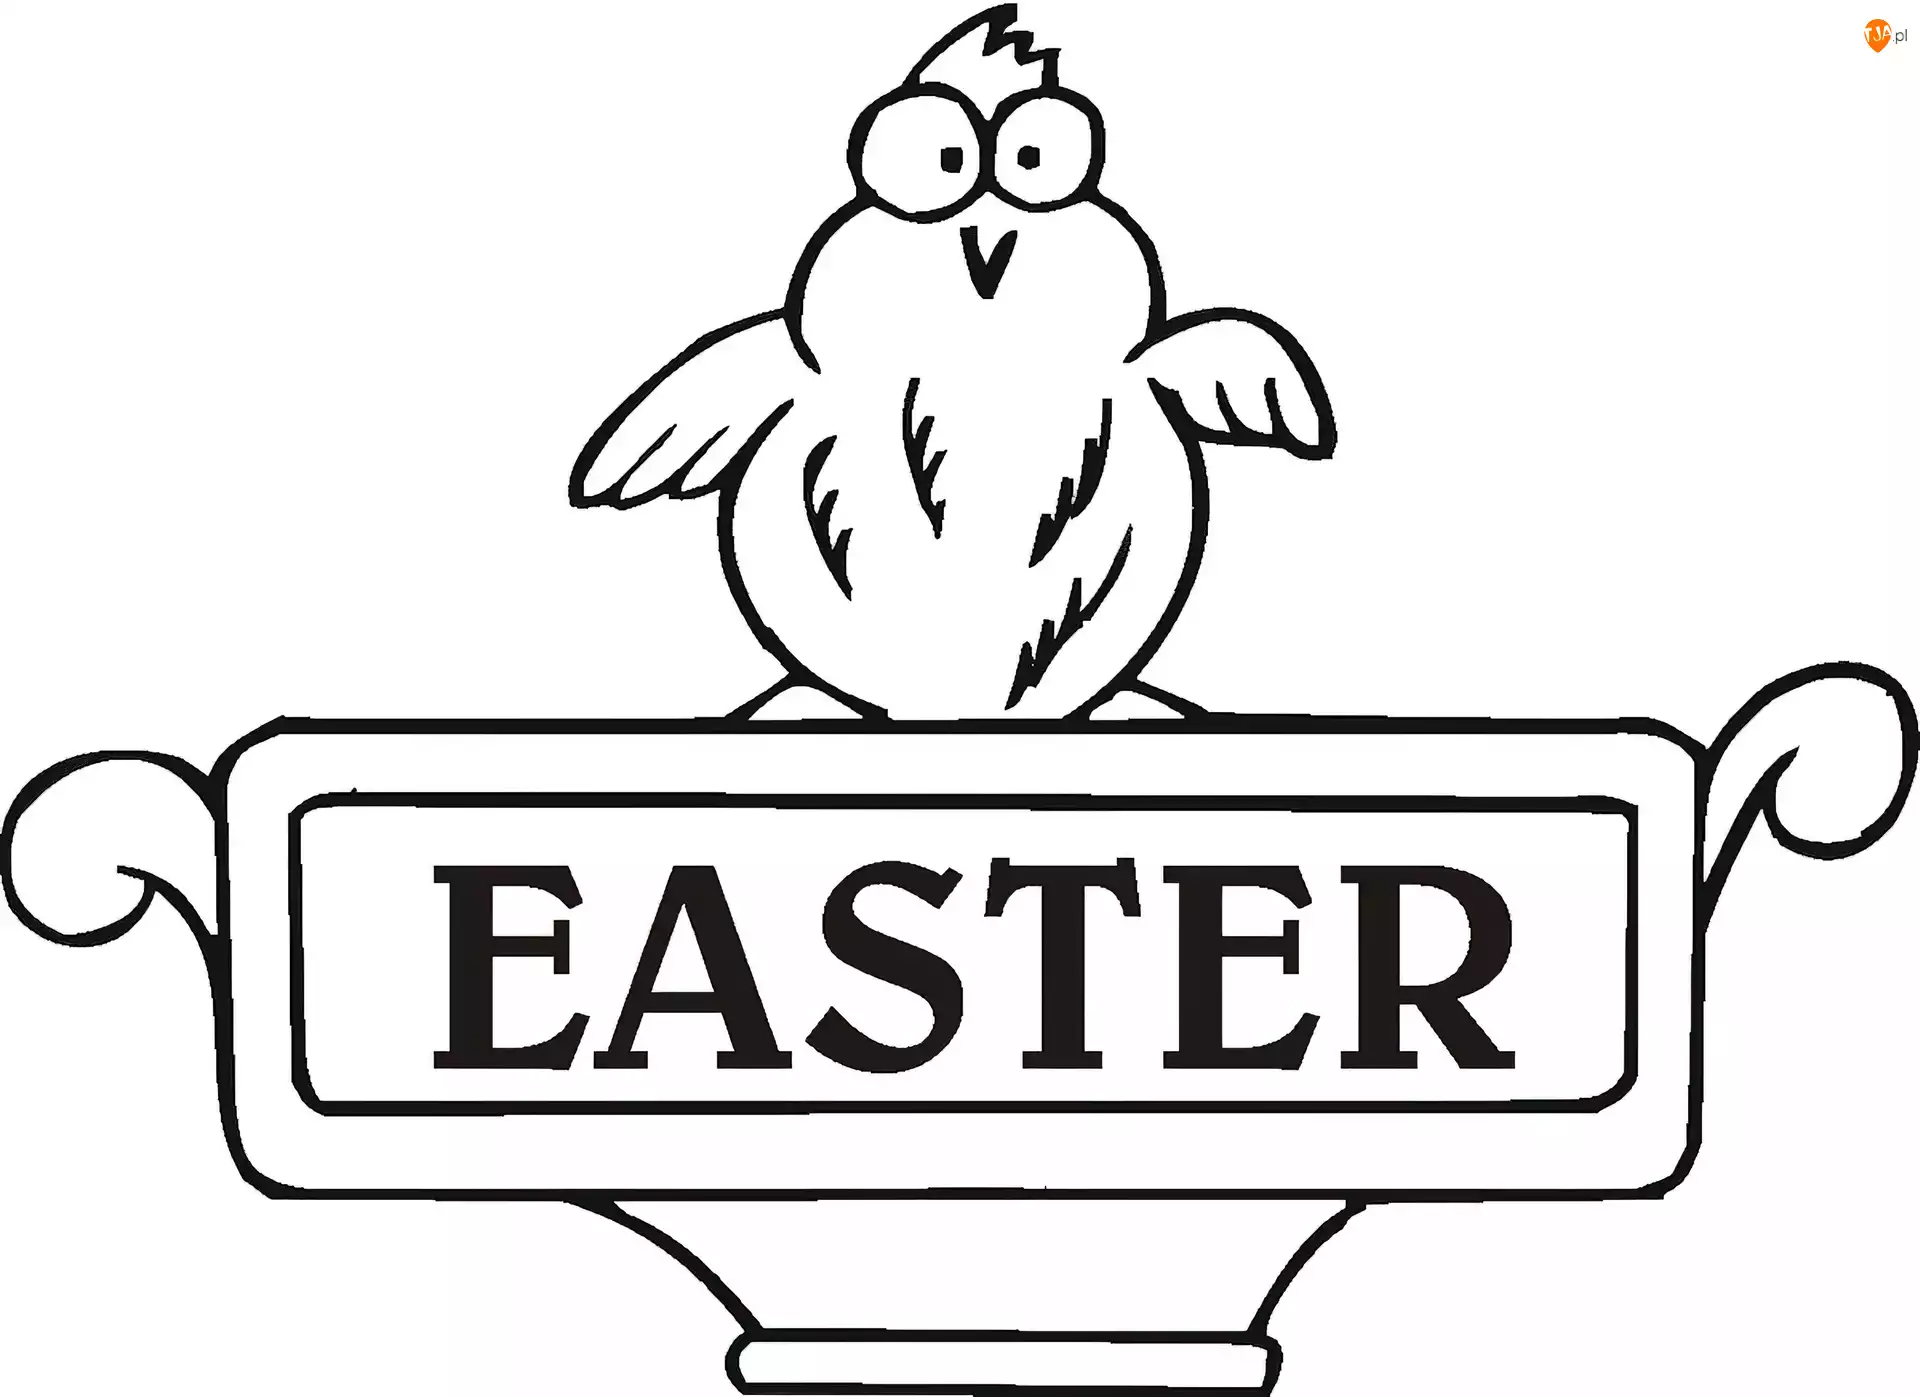 Ester, Wielkanoc